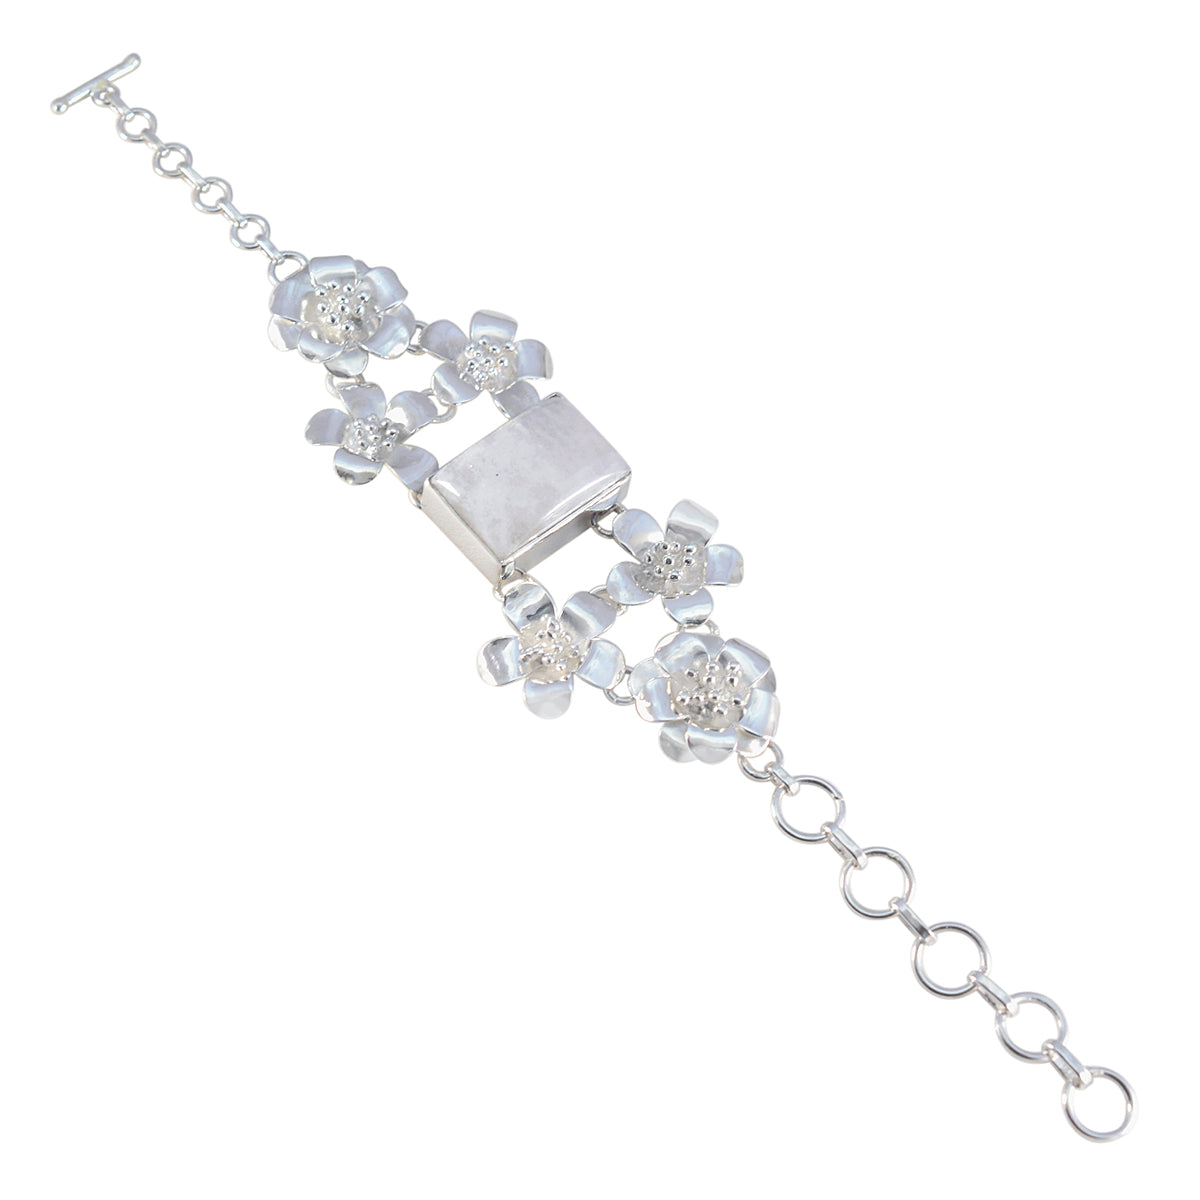 riyo perfekt 925 sterling silver armband för kvinnor regnbåge månsten armband bezel inställning armband med växla charm armband l storlek 6-8,5 tum.